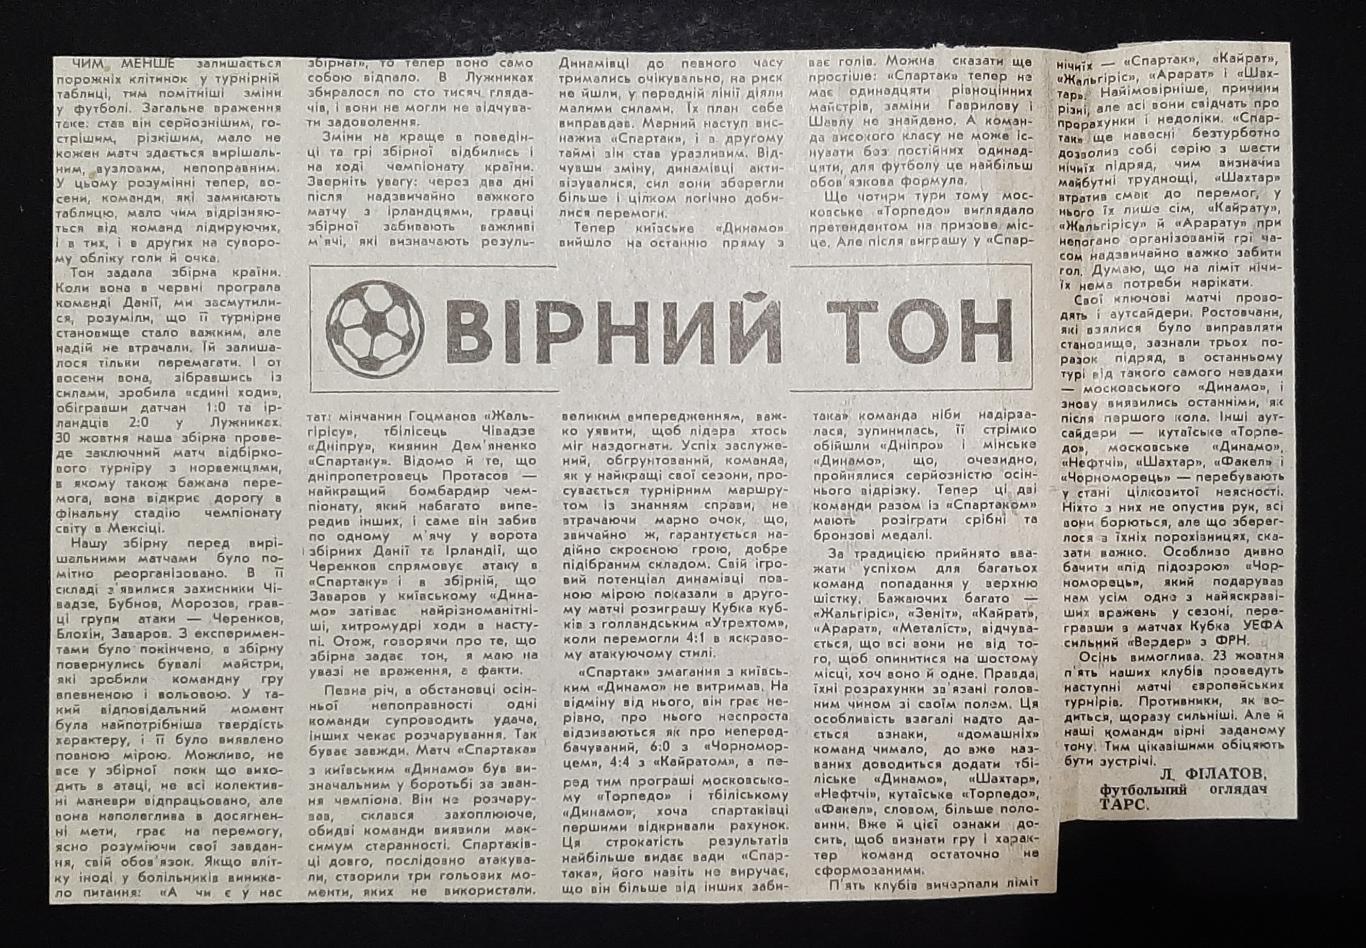 Вирізка з газети 1985 Вірний тон